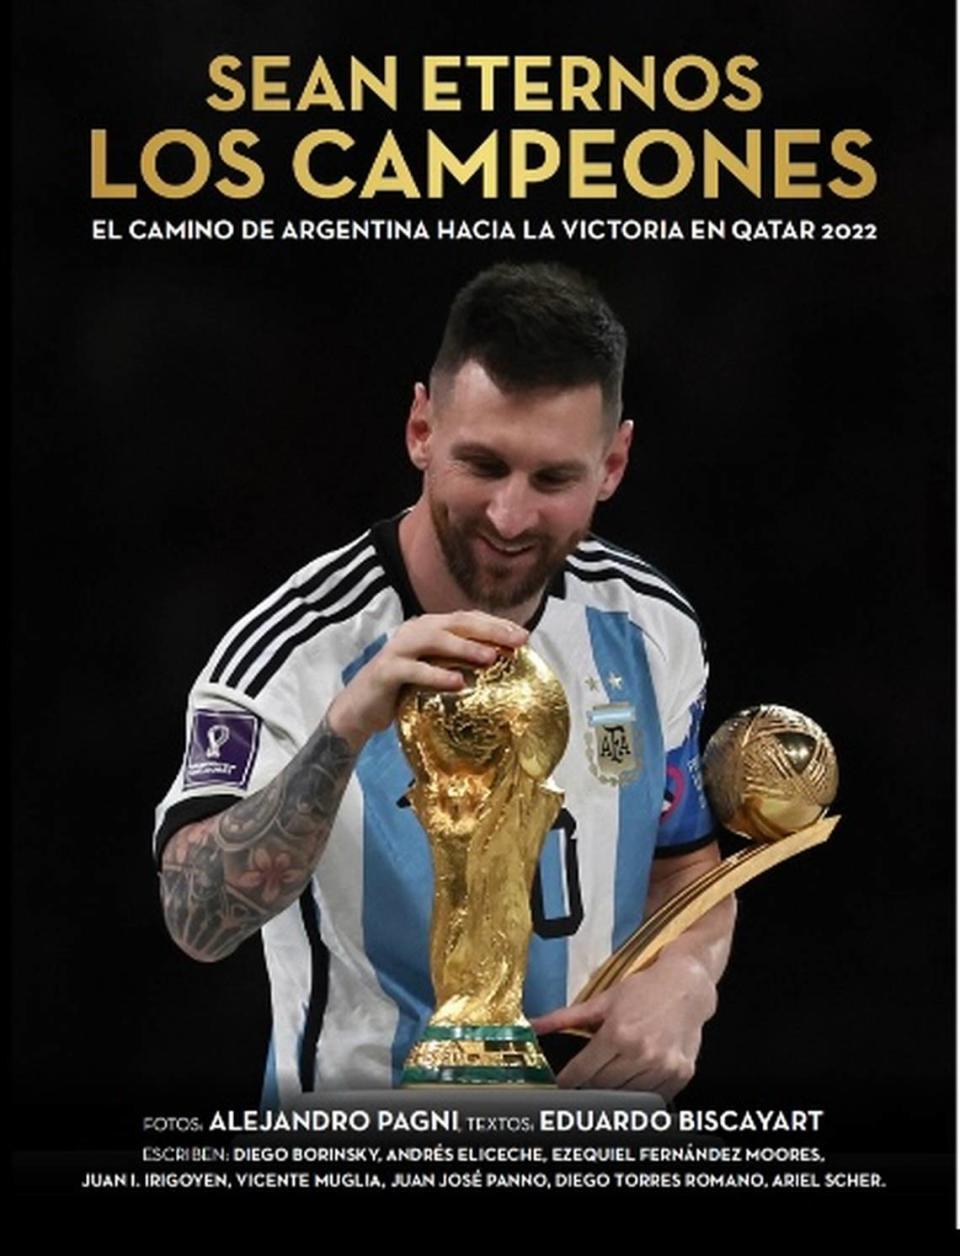 Sean eternos los campeones, un libro a todo color que recrea la epopeya argentina en Catar 2022.